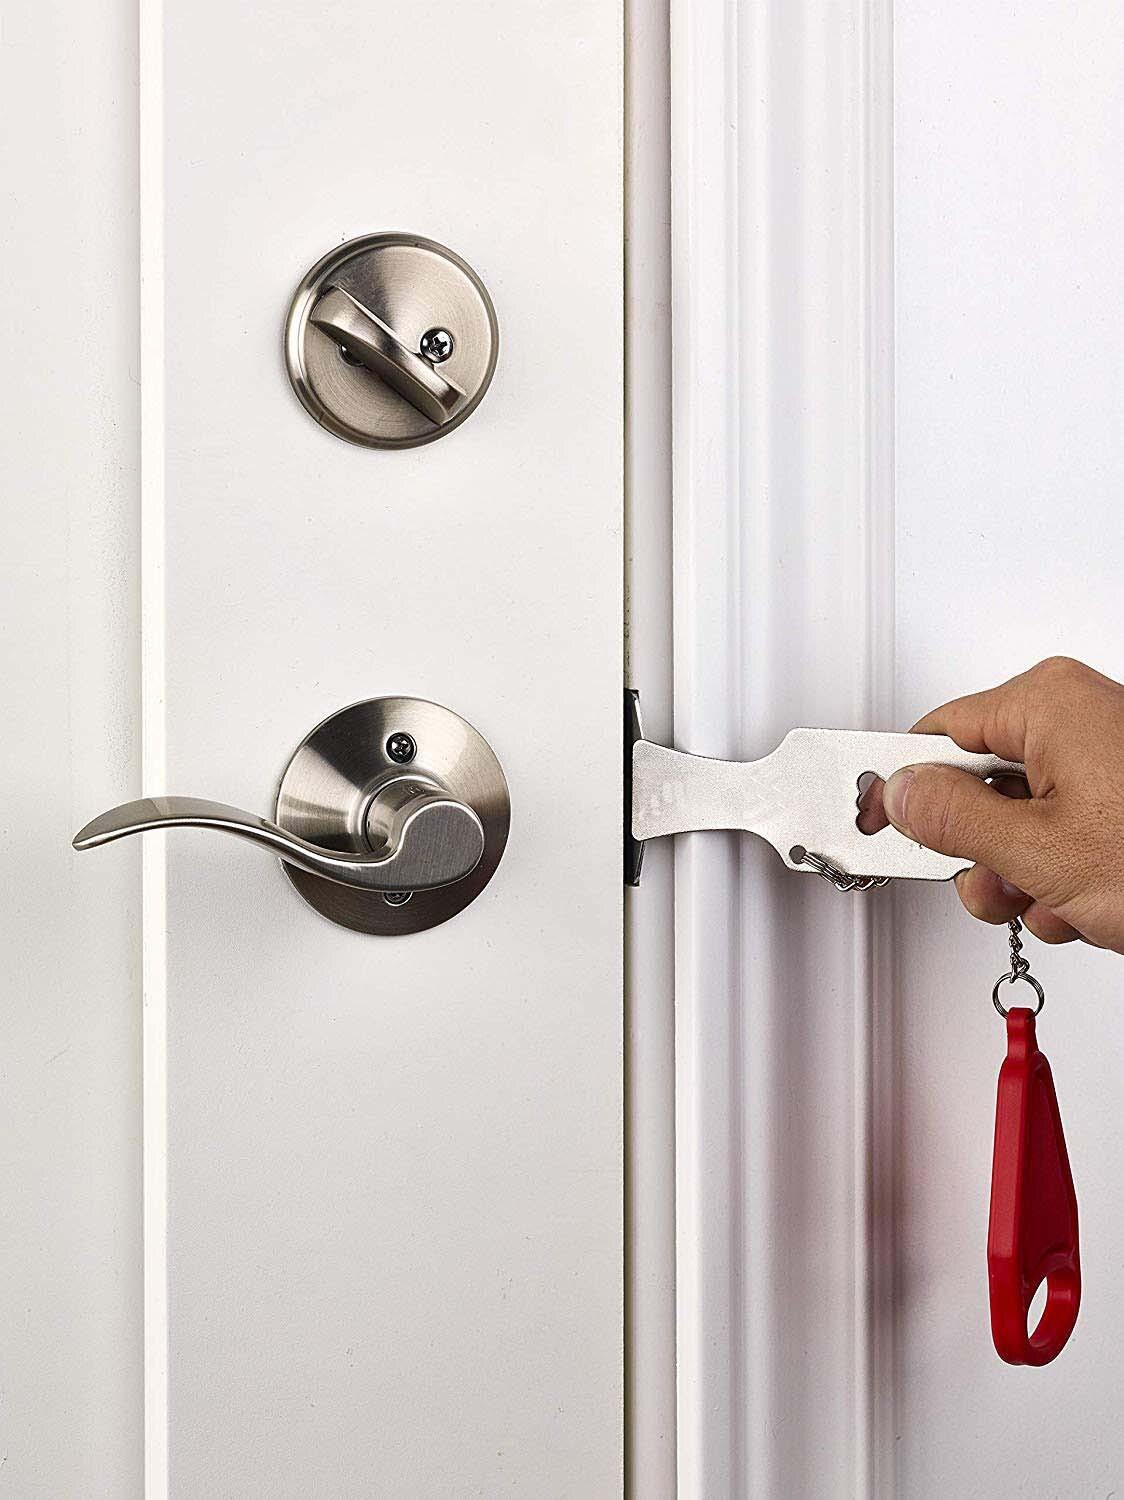 Pp metal bærbar sikkerhedsdørlås erstatter addalock-kompatibel rejselås tyverisikring privatliv hotelværelse